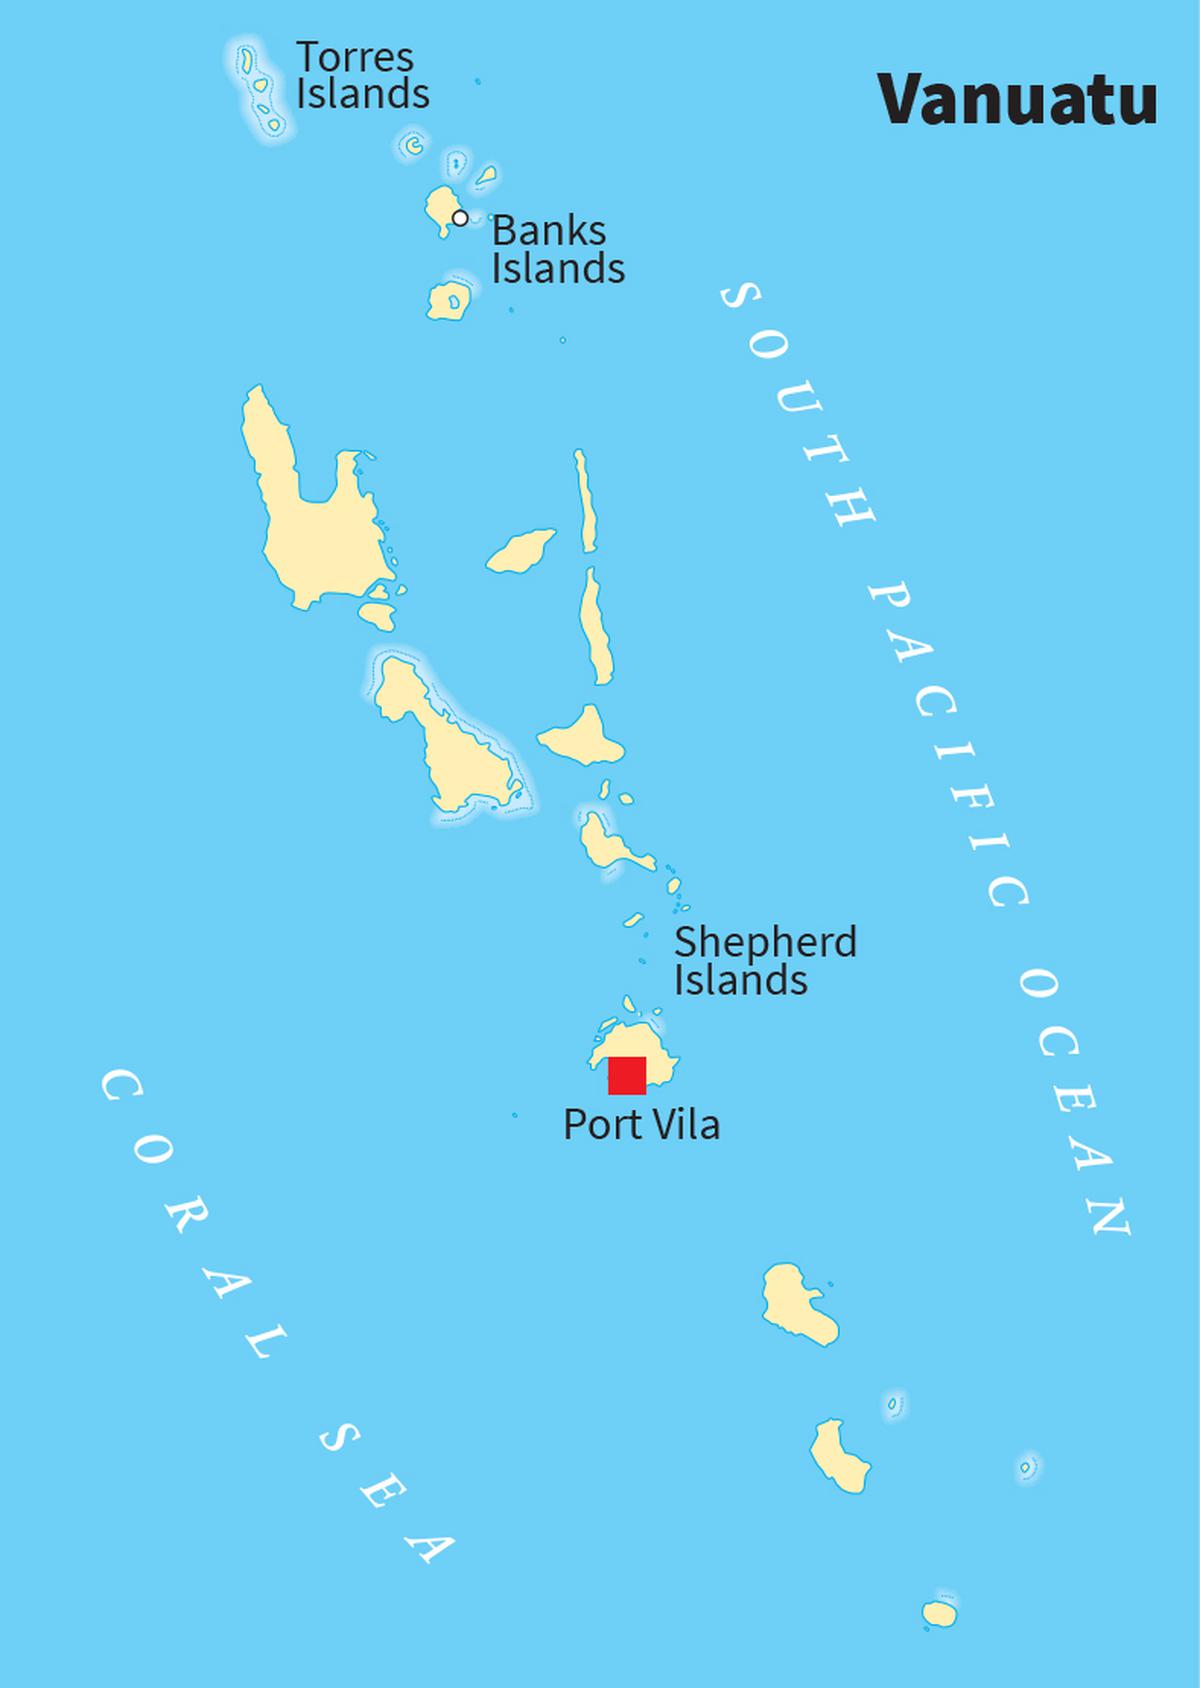 The map of Vanuatu